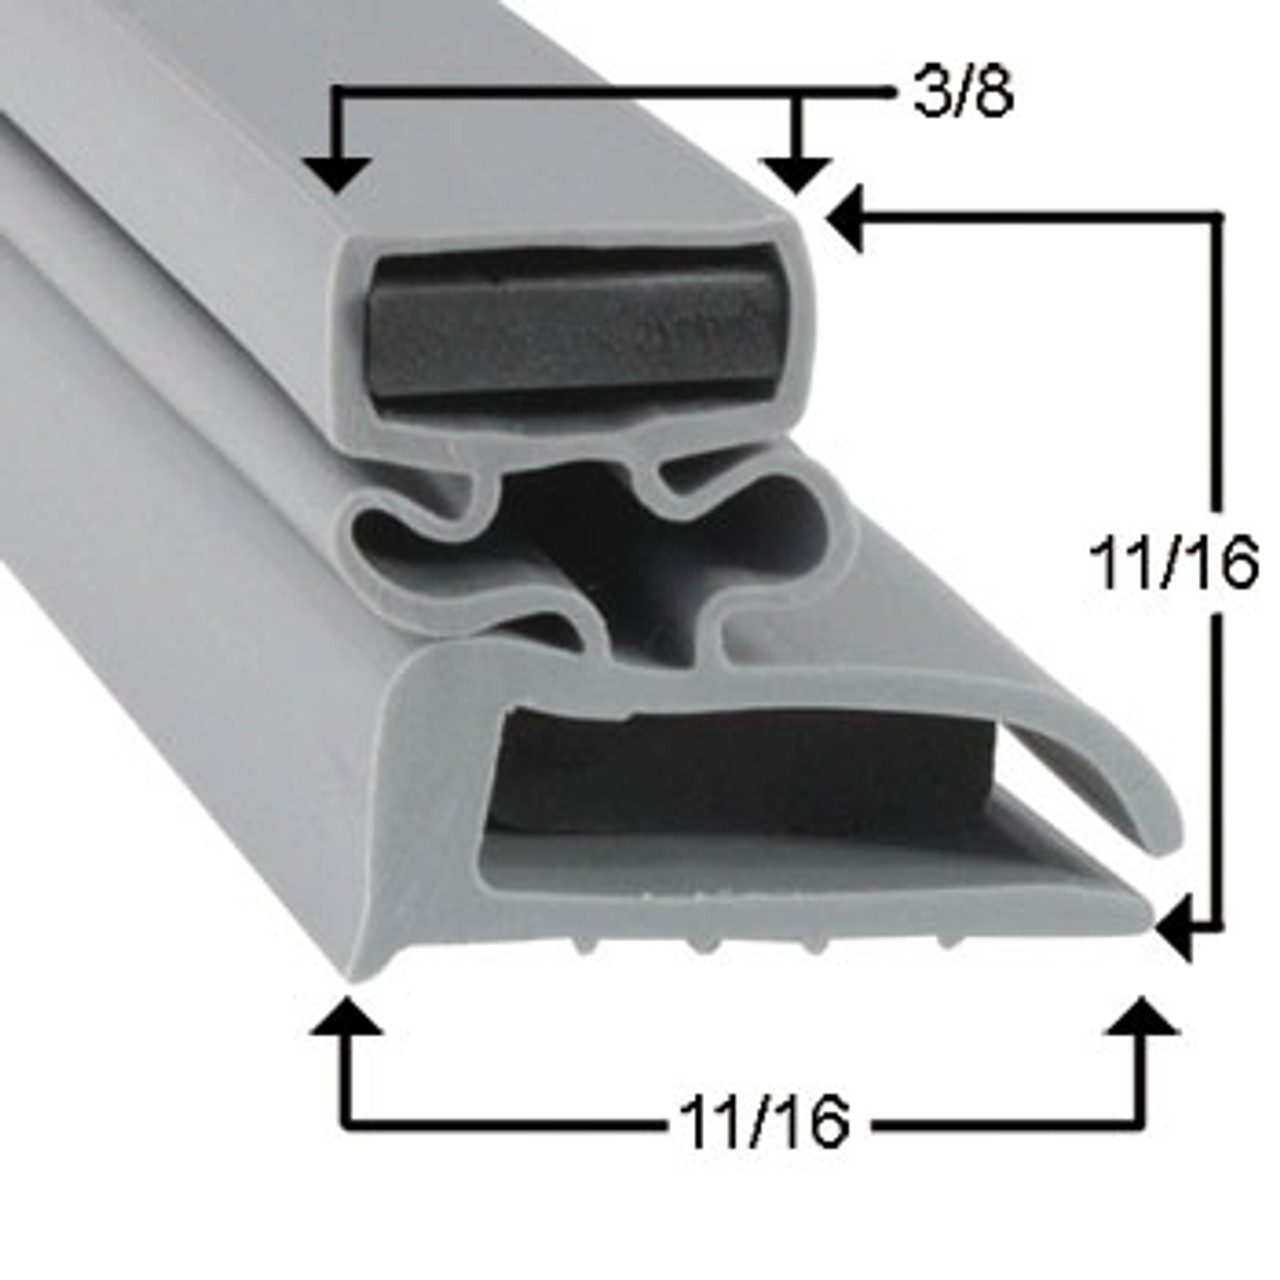 Perlick Cooler and Freezer Door Gasket Profile 702 15 1/4 x 24 1/4 (Style 10095)_2